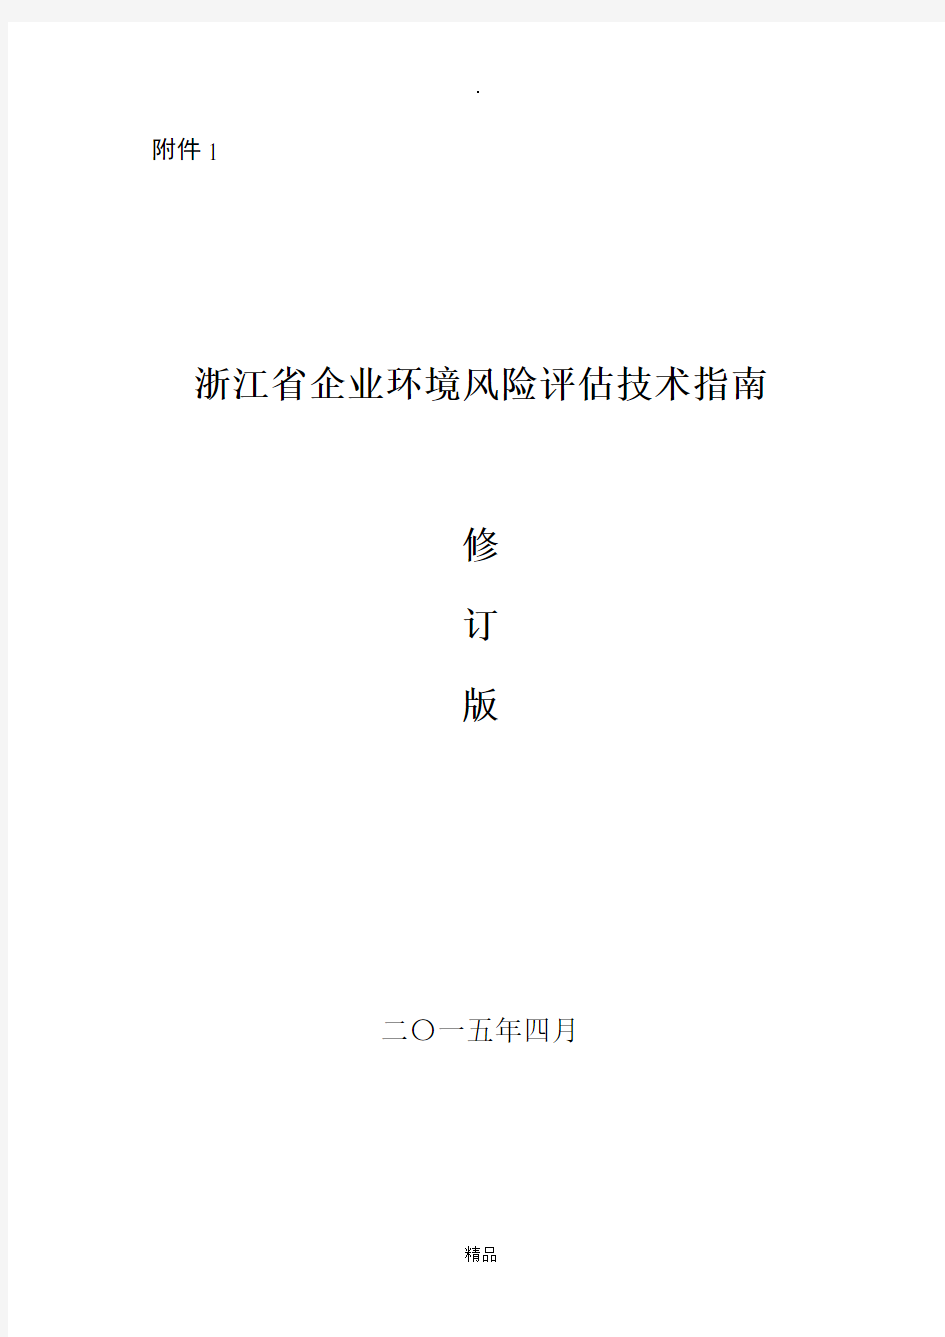 浙江省企业环境风险评估技术指南(修订版) 2015